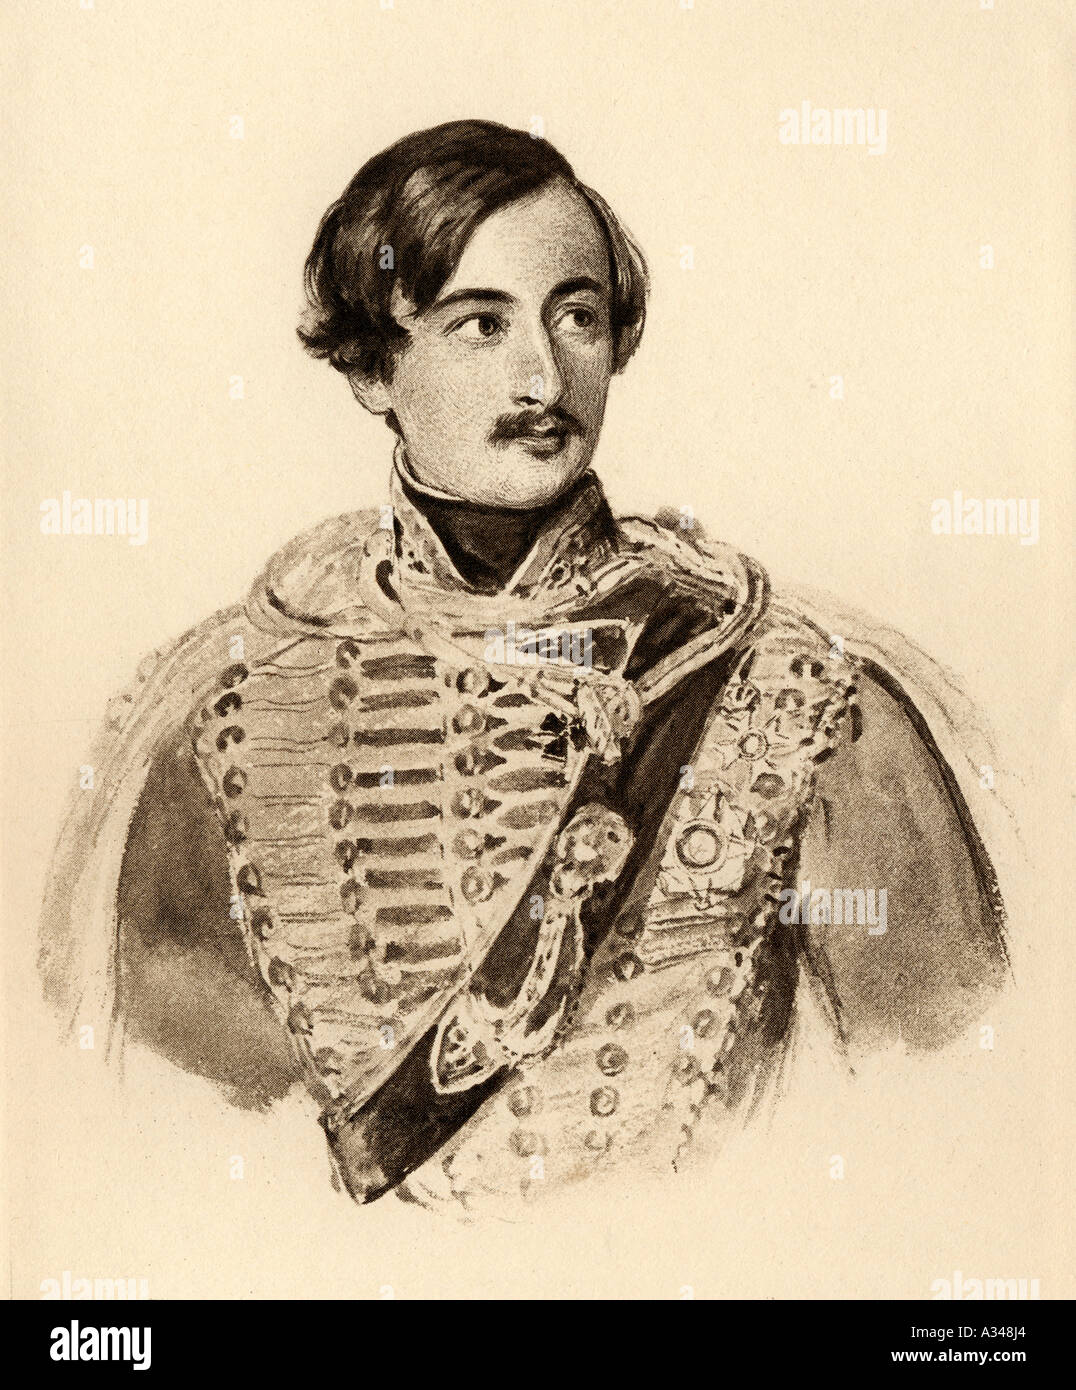 Count Alexander Konstantin Albrecht von Mensdorff-Pouilly, Prince von Dietrichstein zu Nikolsburg 1814-1871. Austrian general, diplomat and politician Stock Photo